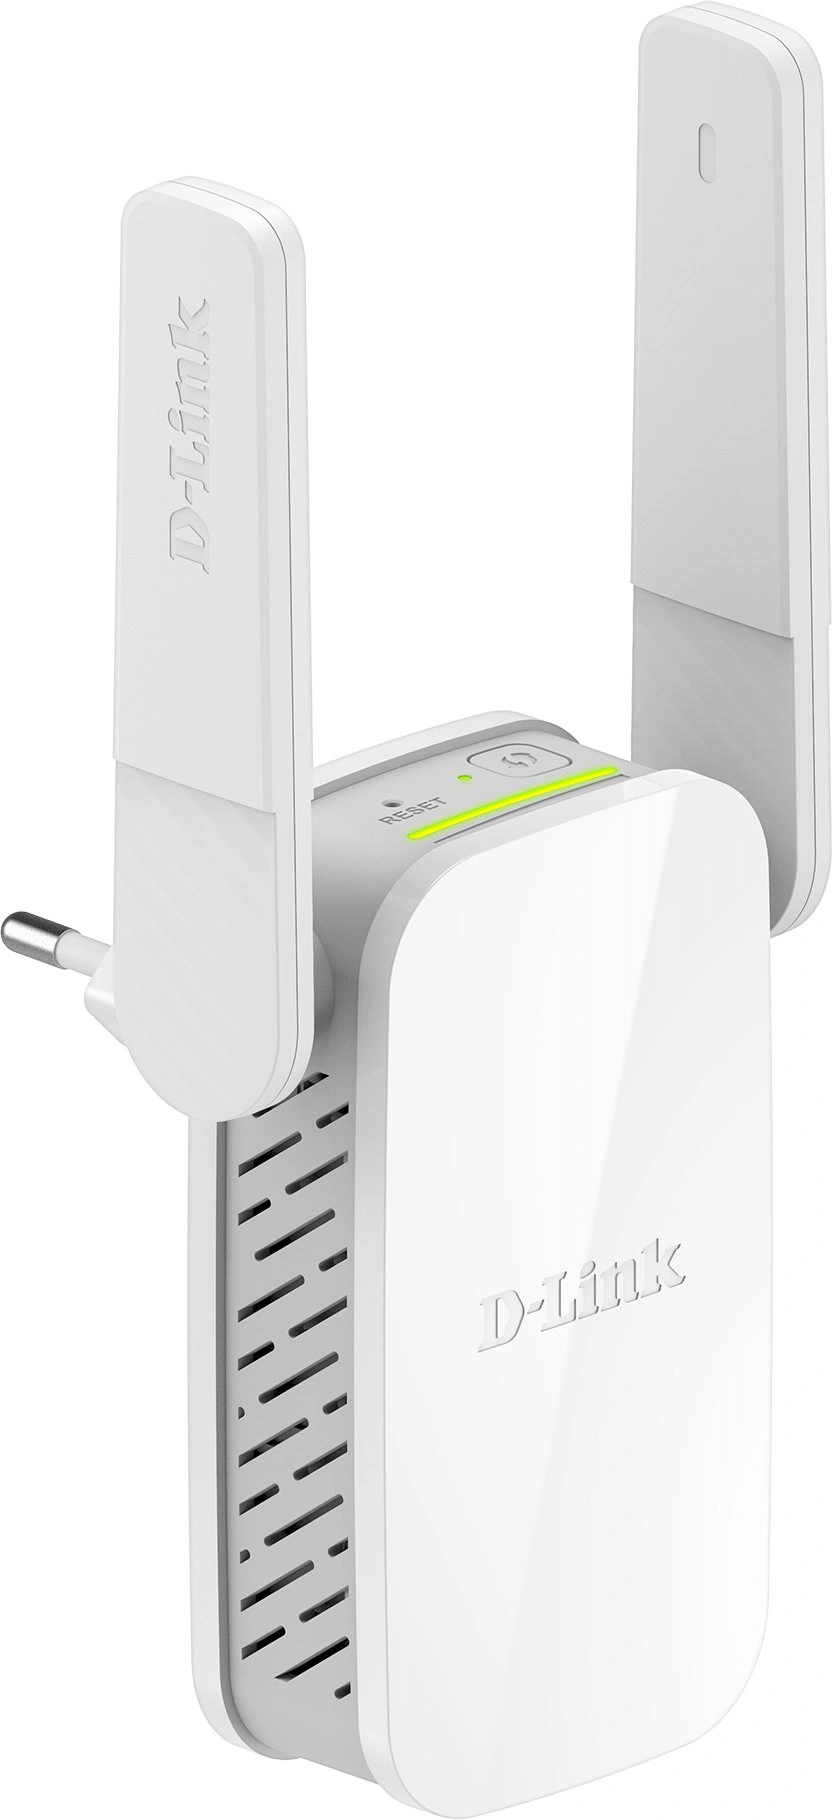 D-Link DAP-1610 WiFi extender